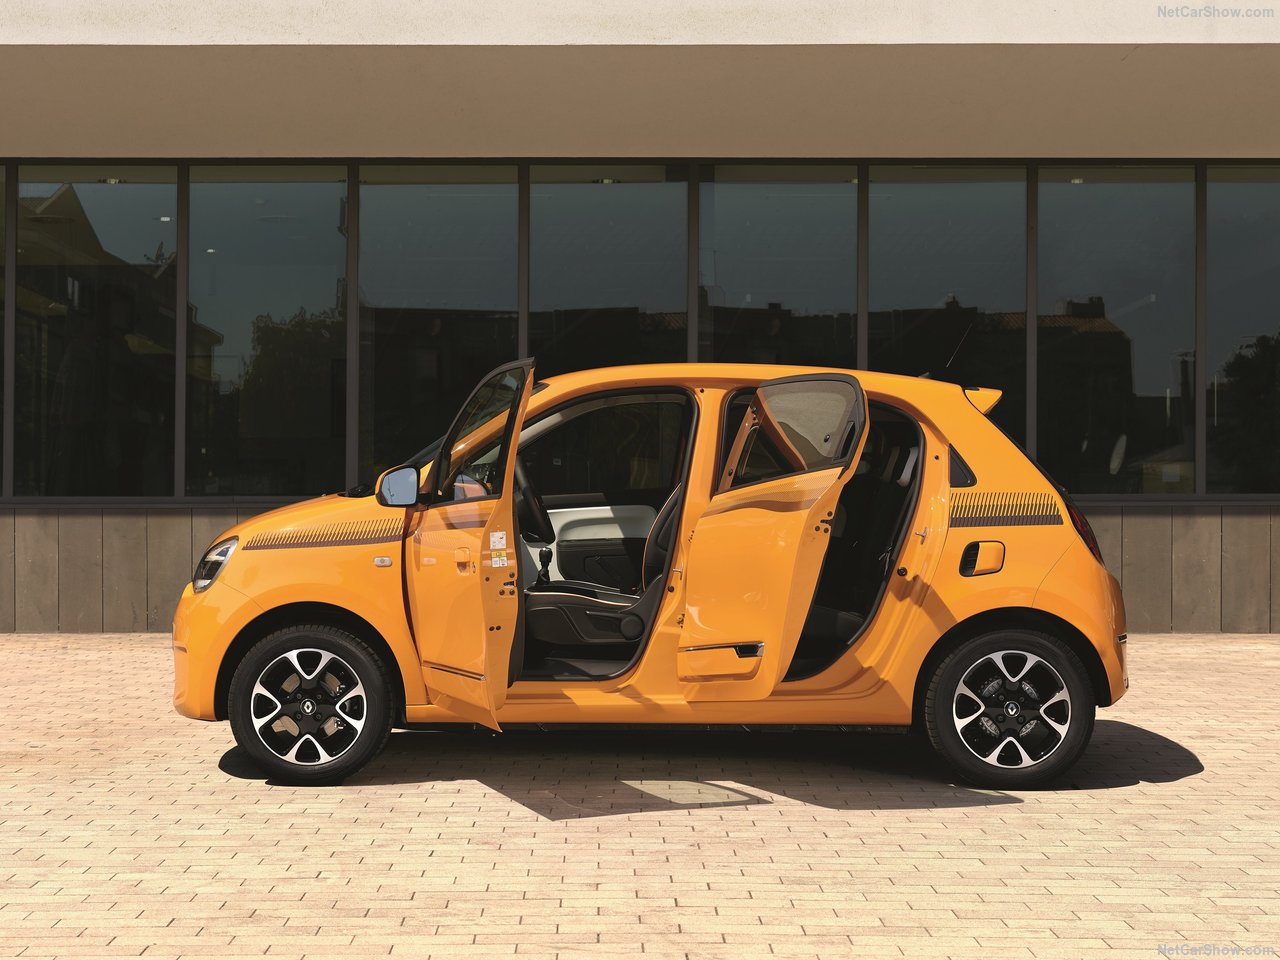 2019 Renault Twingo tanıtıldı! Yeni Renault Twingo’nun motor ve donanım özellikleri neler?